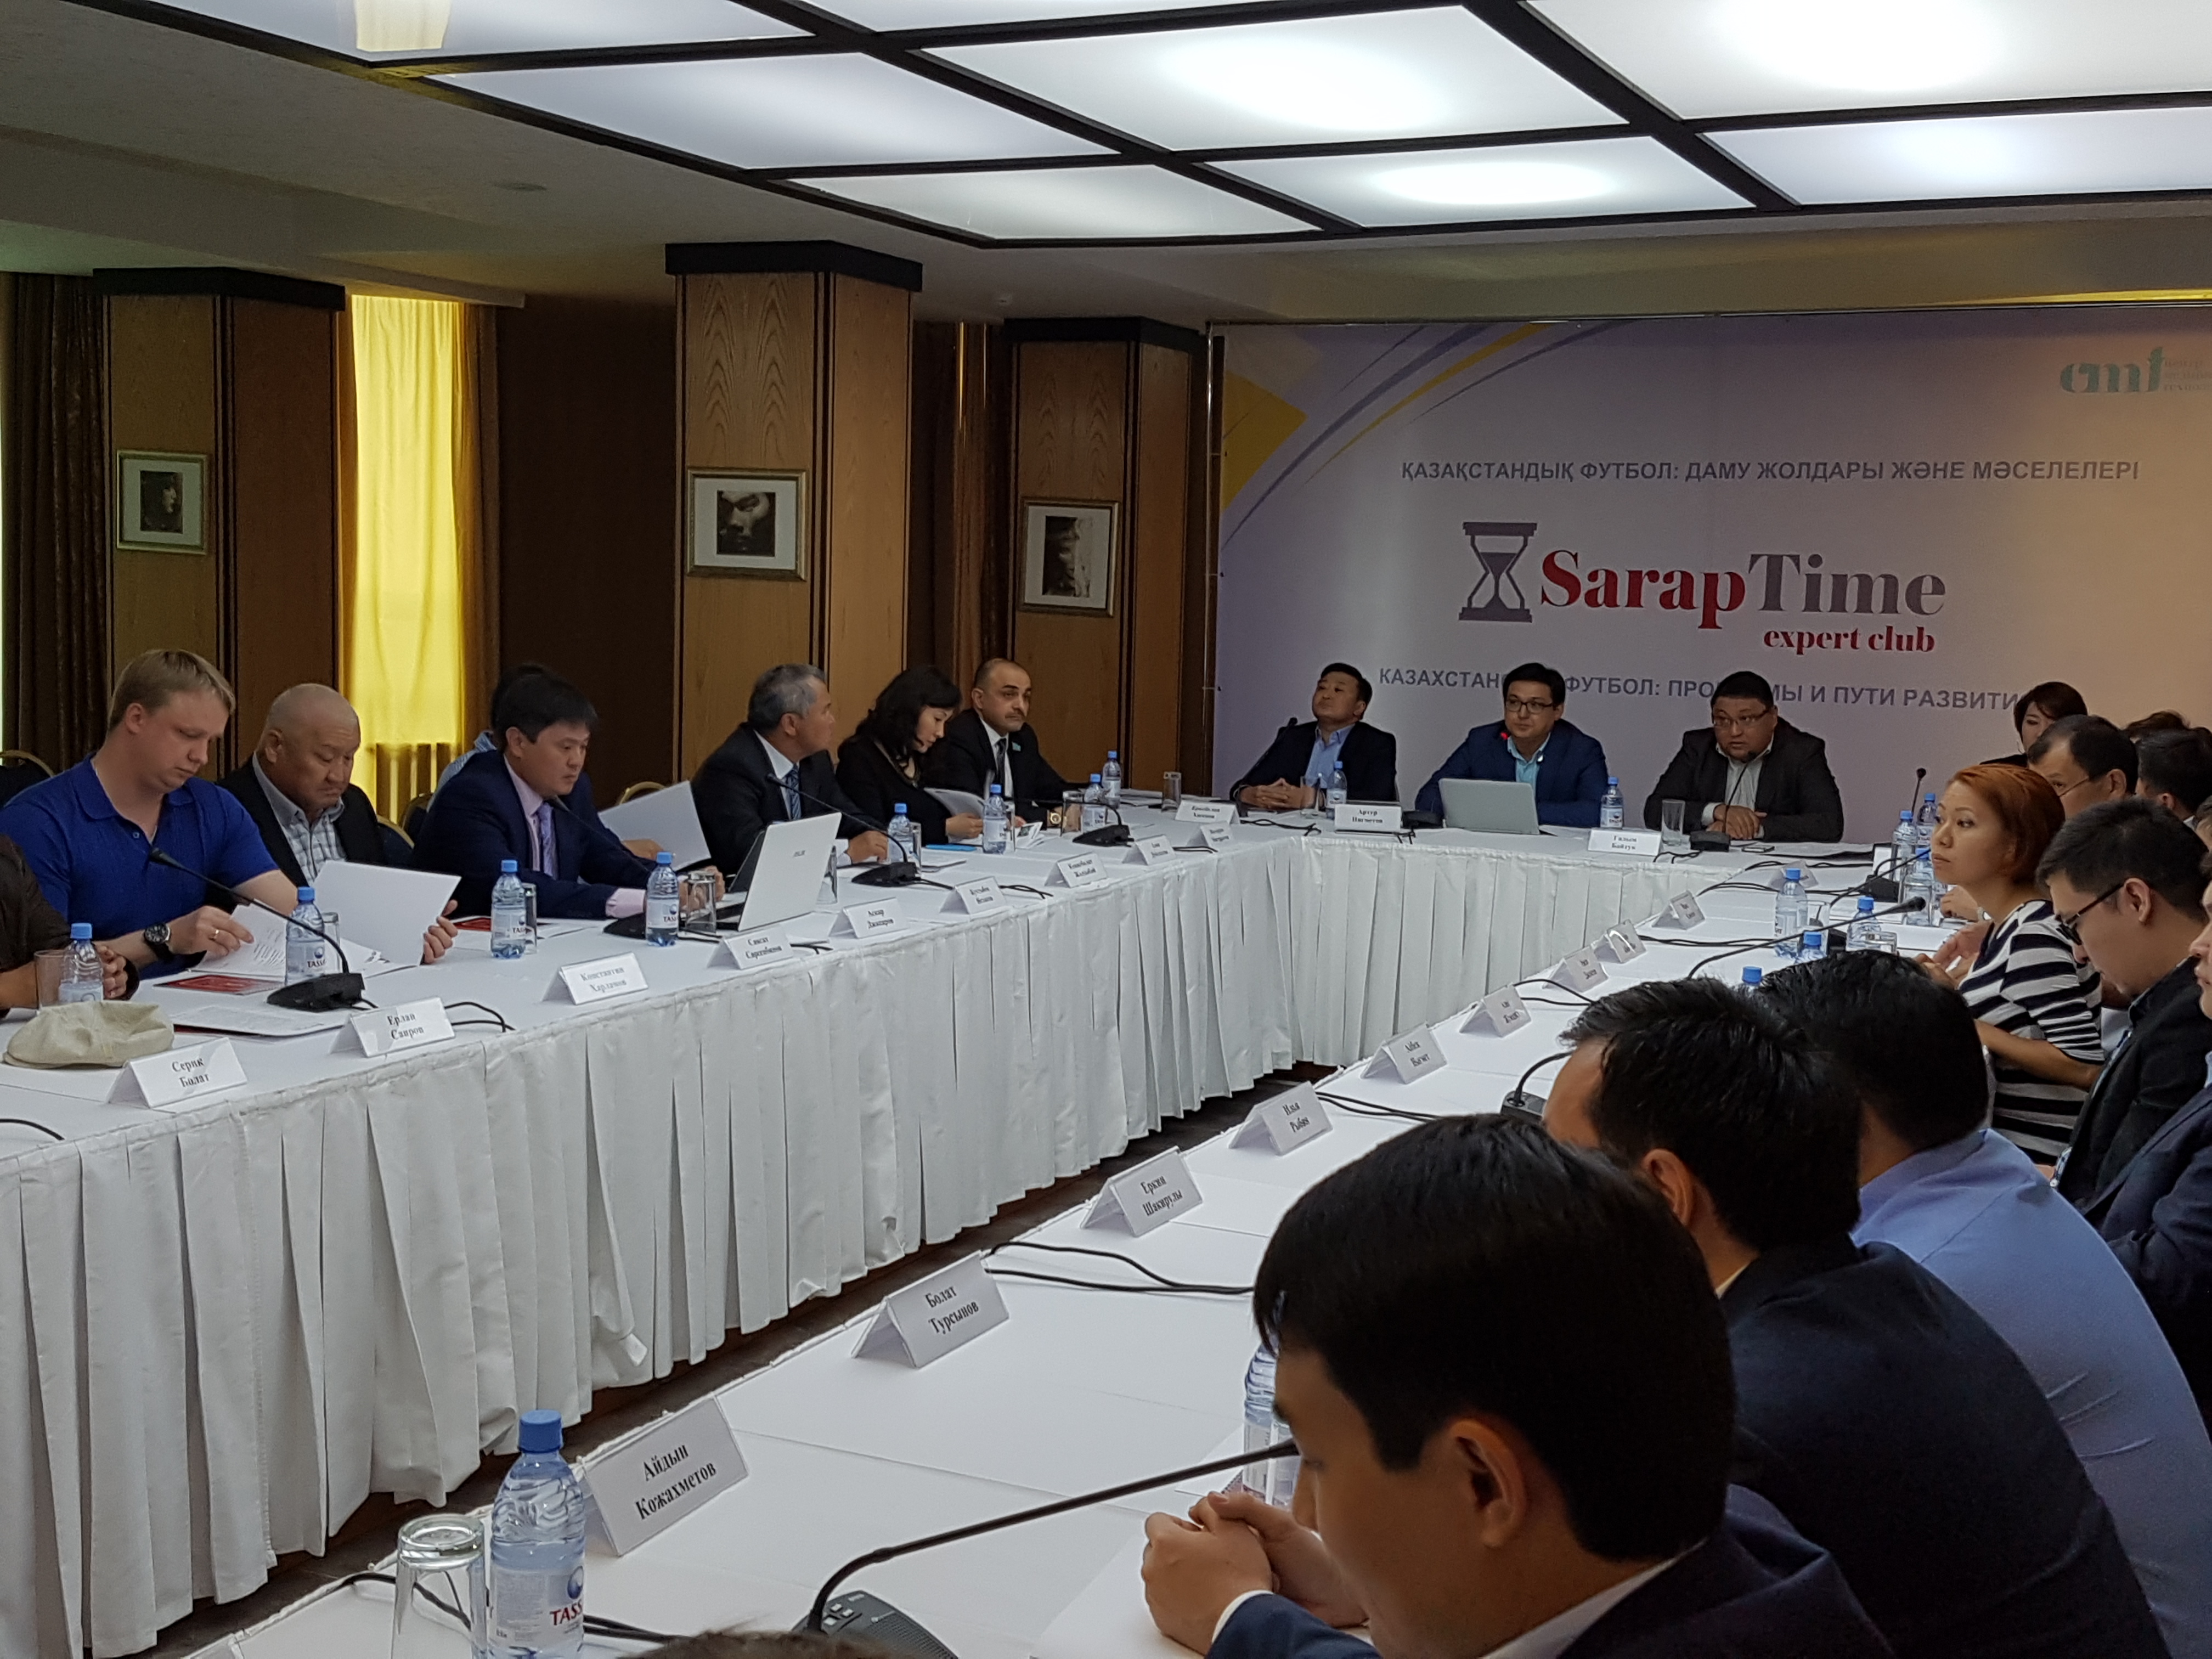 Заседание Экспертного Клуба "Sarap Time" на тему: "Казахстанский футбол: проблемы и пути развития"